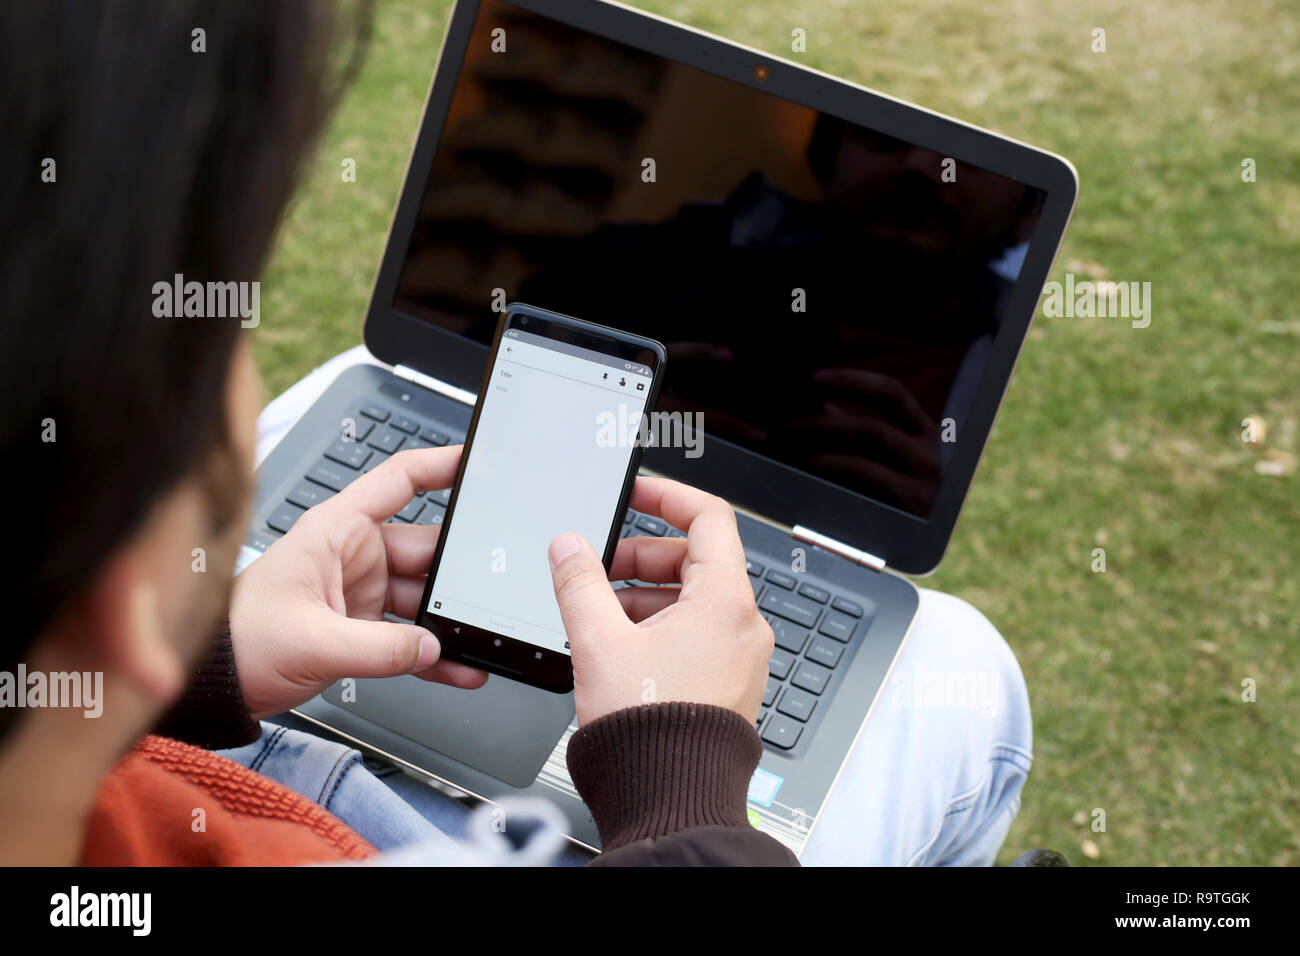 Garçon travaille sur le smartphone avec un ordinateur portable. Banque D'Images